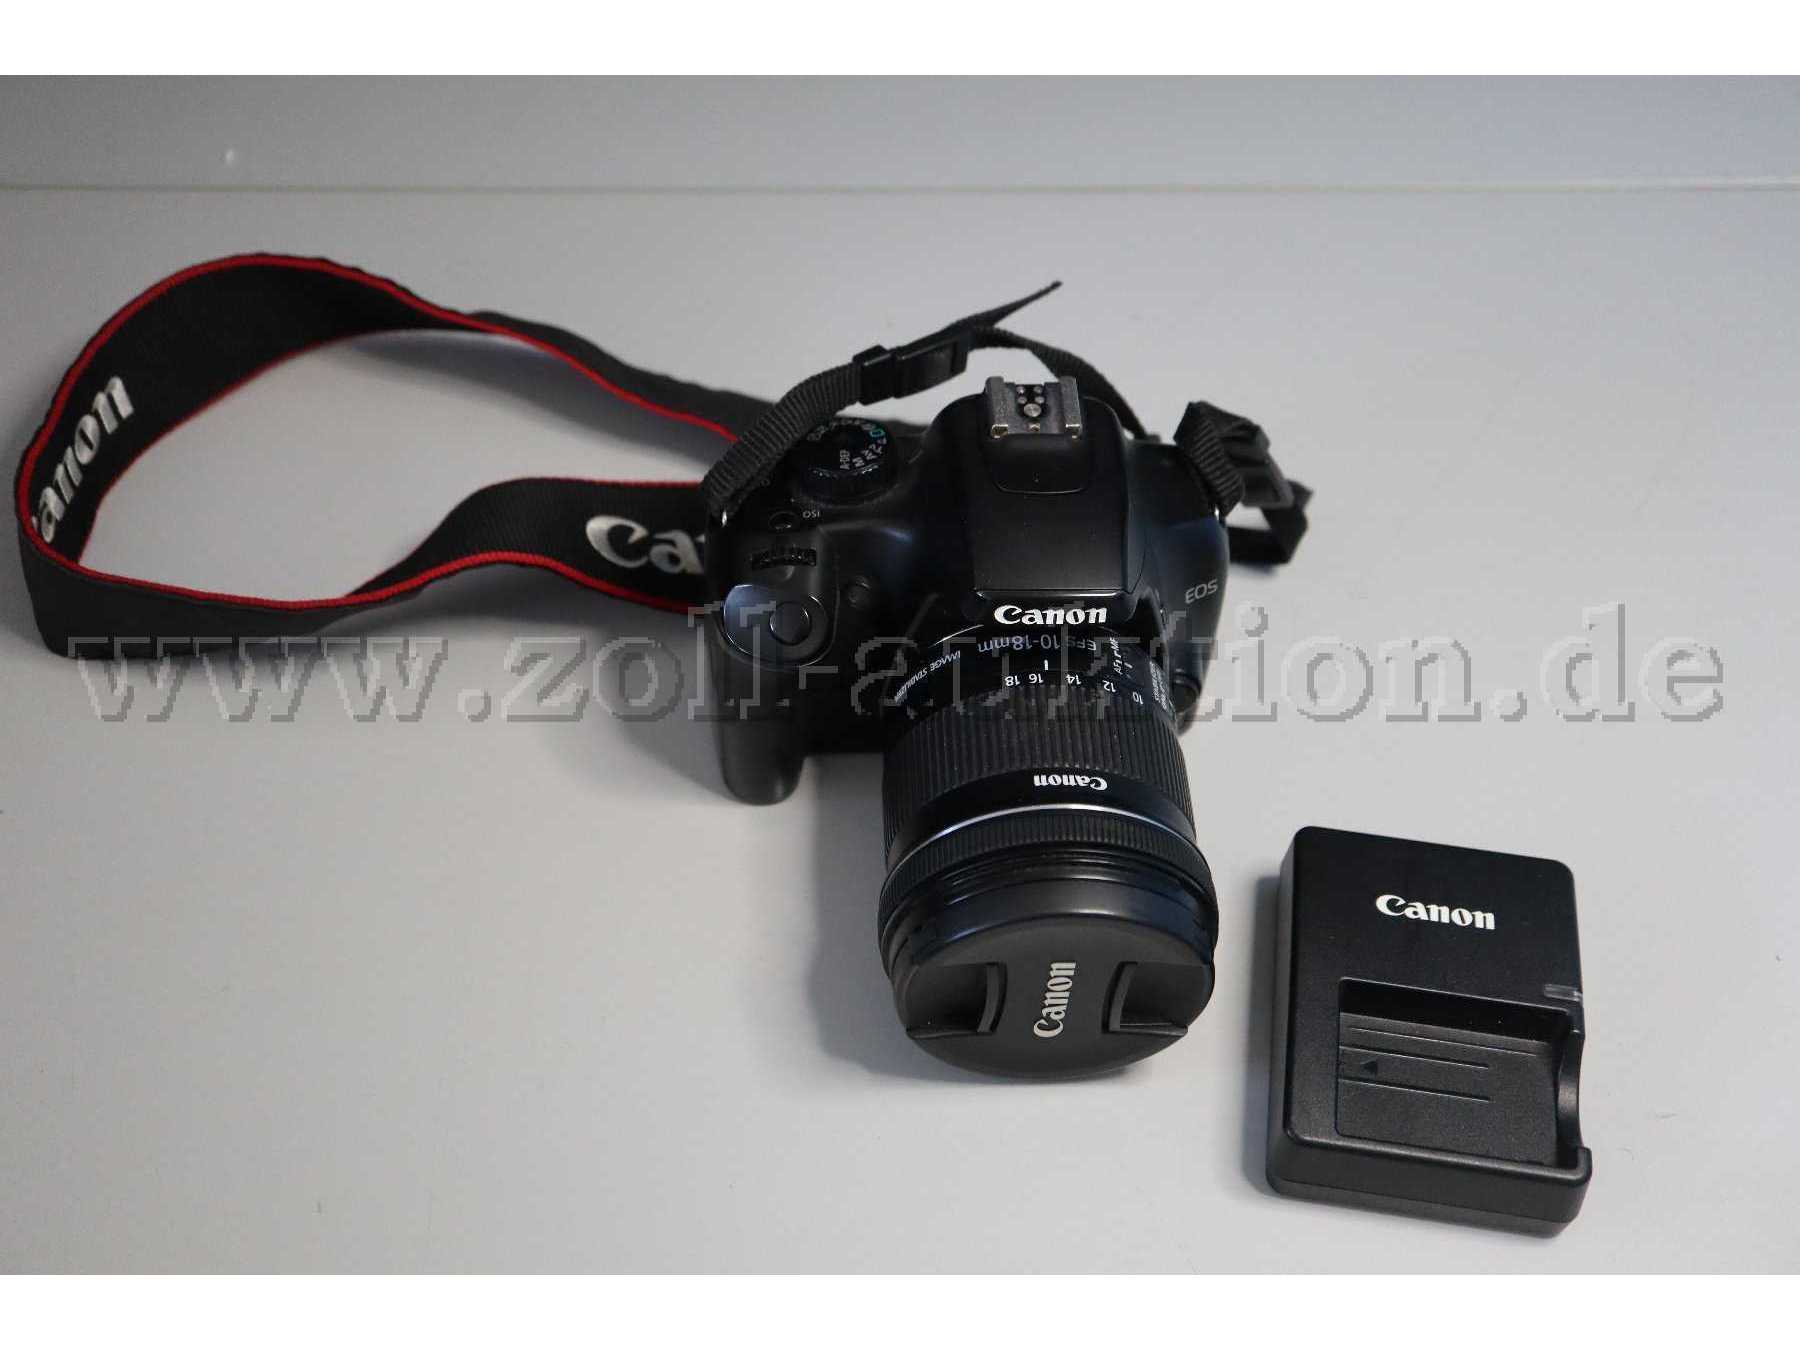 Canon EOS 1000D und Ladegerät